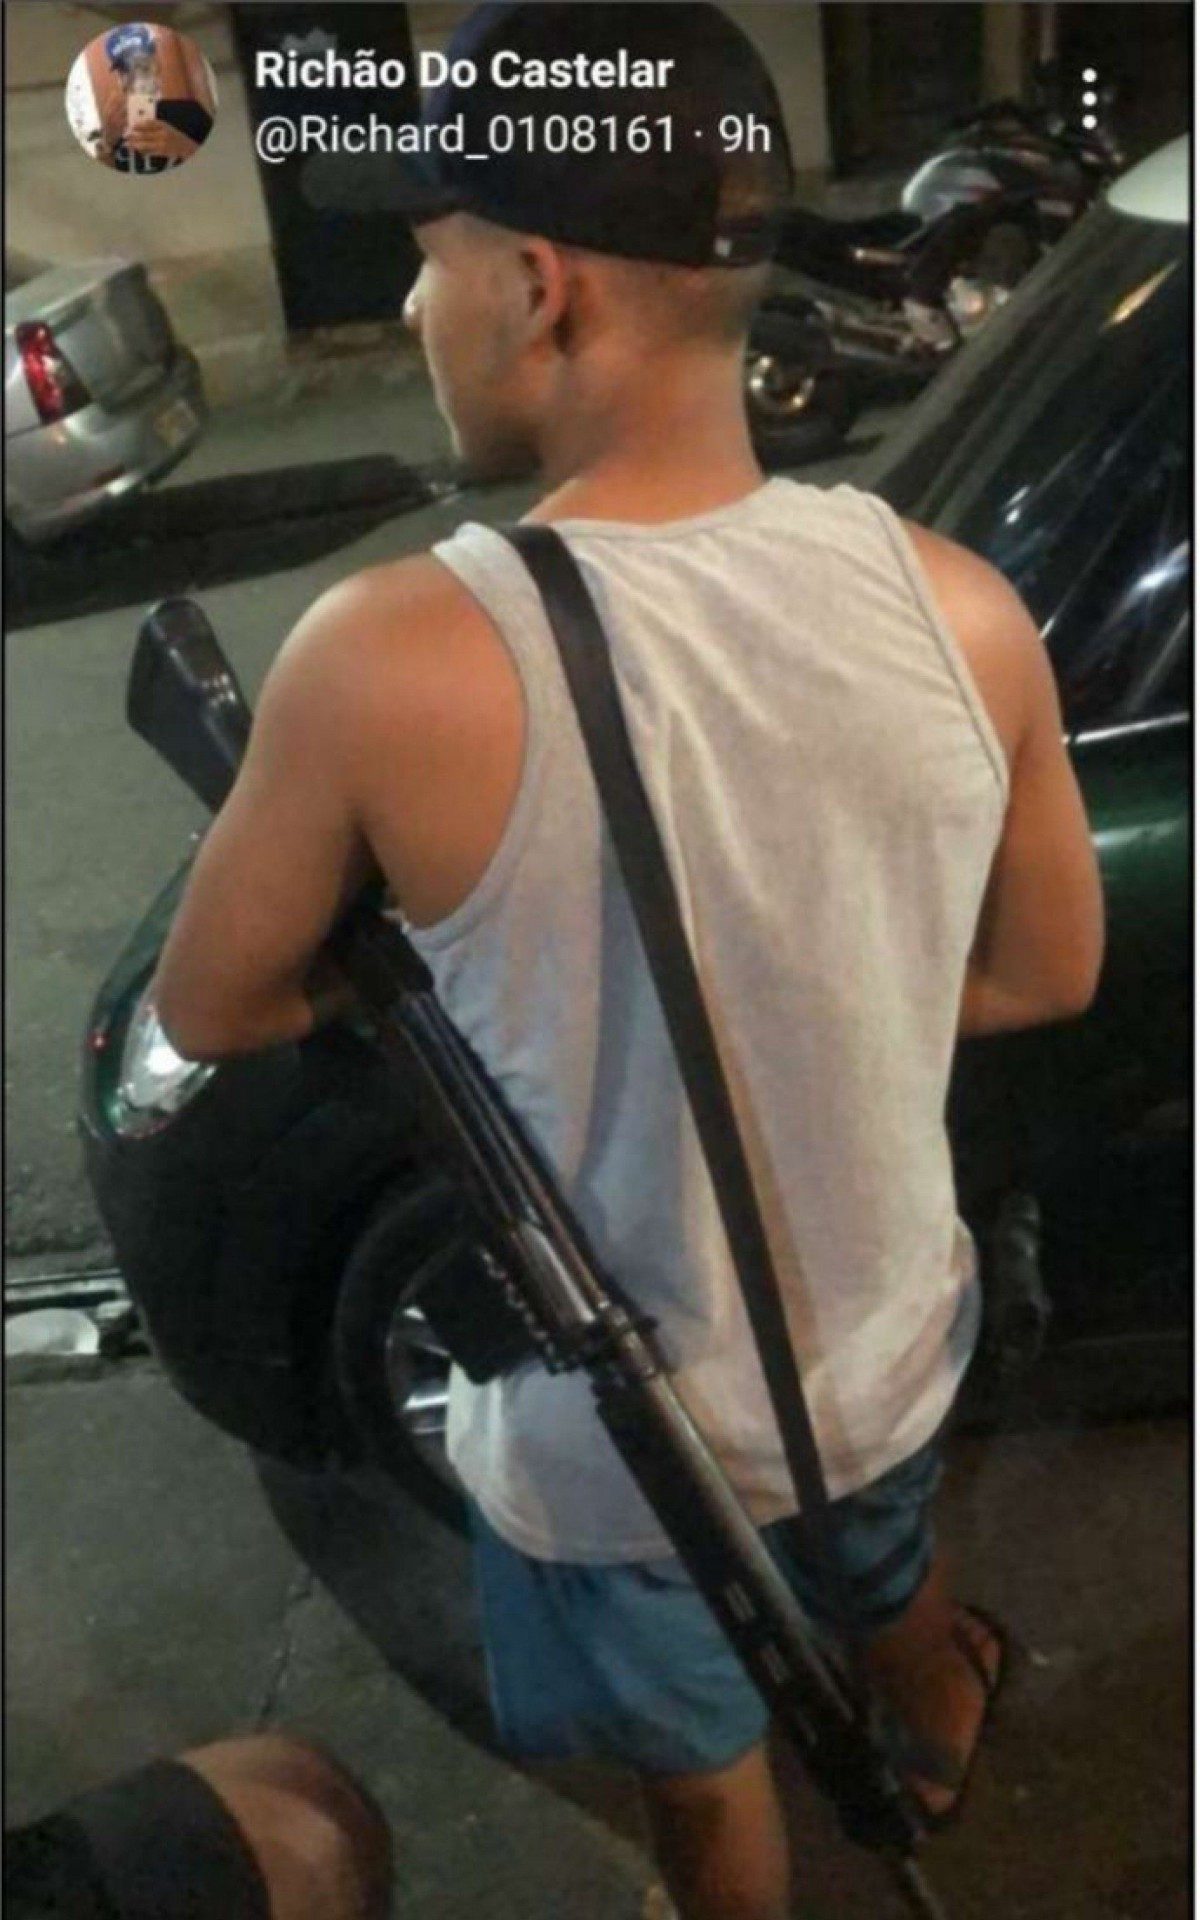 Nas redes sociais, Richão se exibia constantemente postando fotos armado com fuzil - Divulgação 